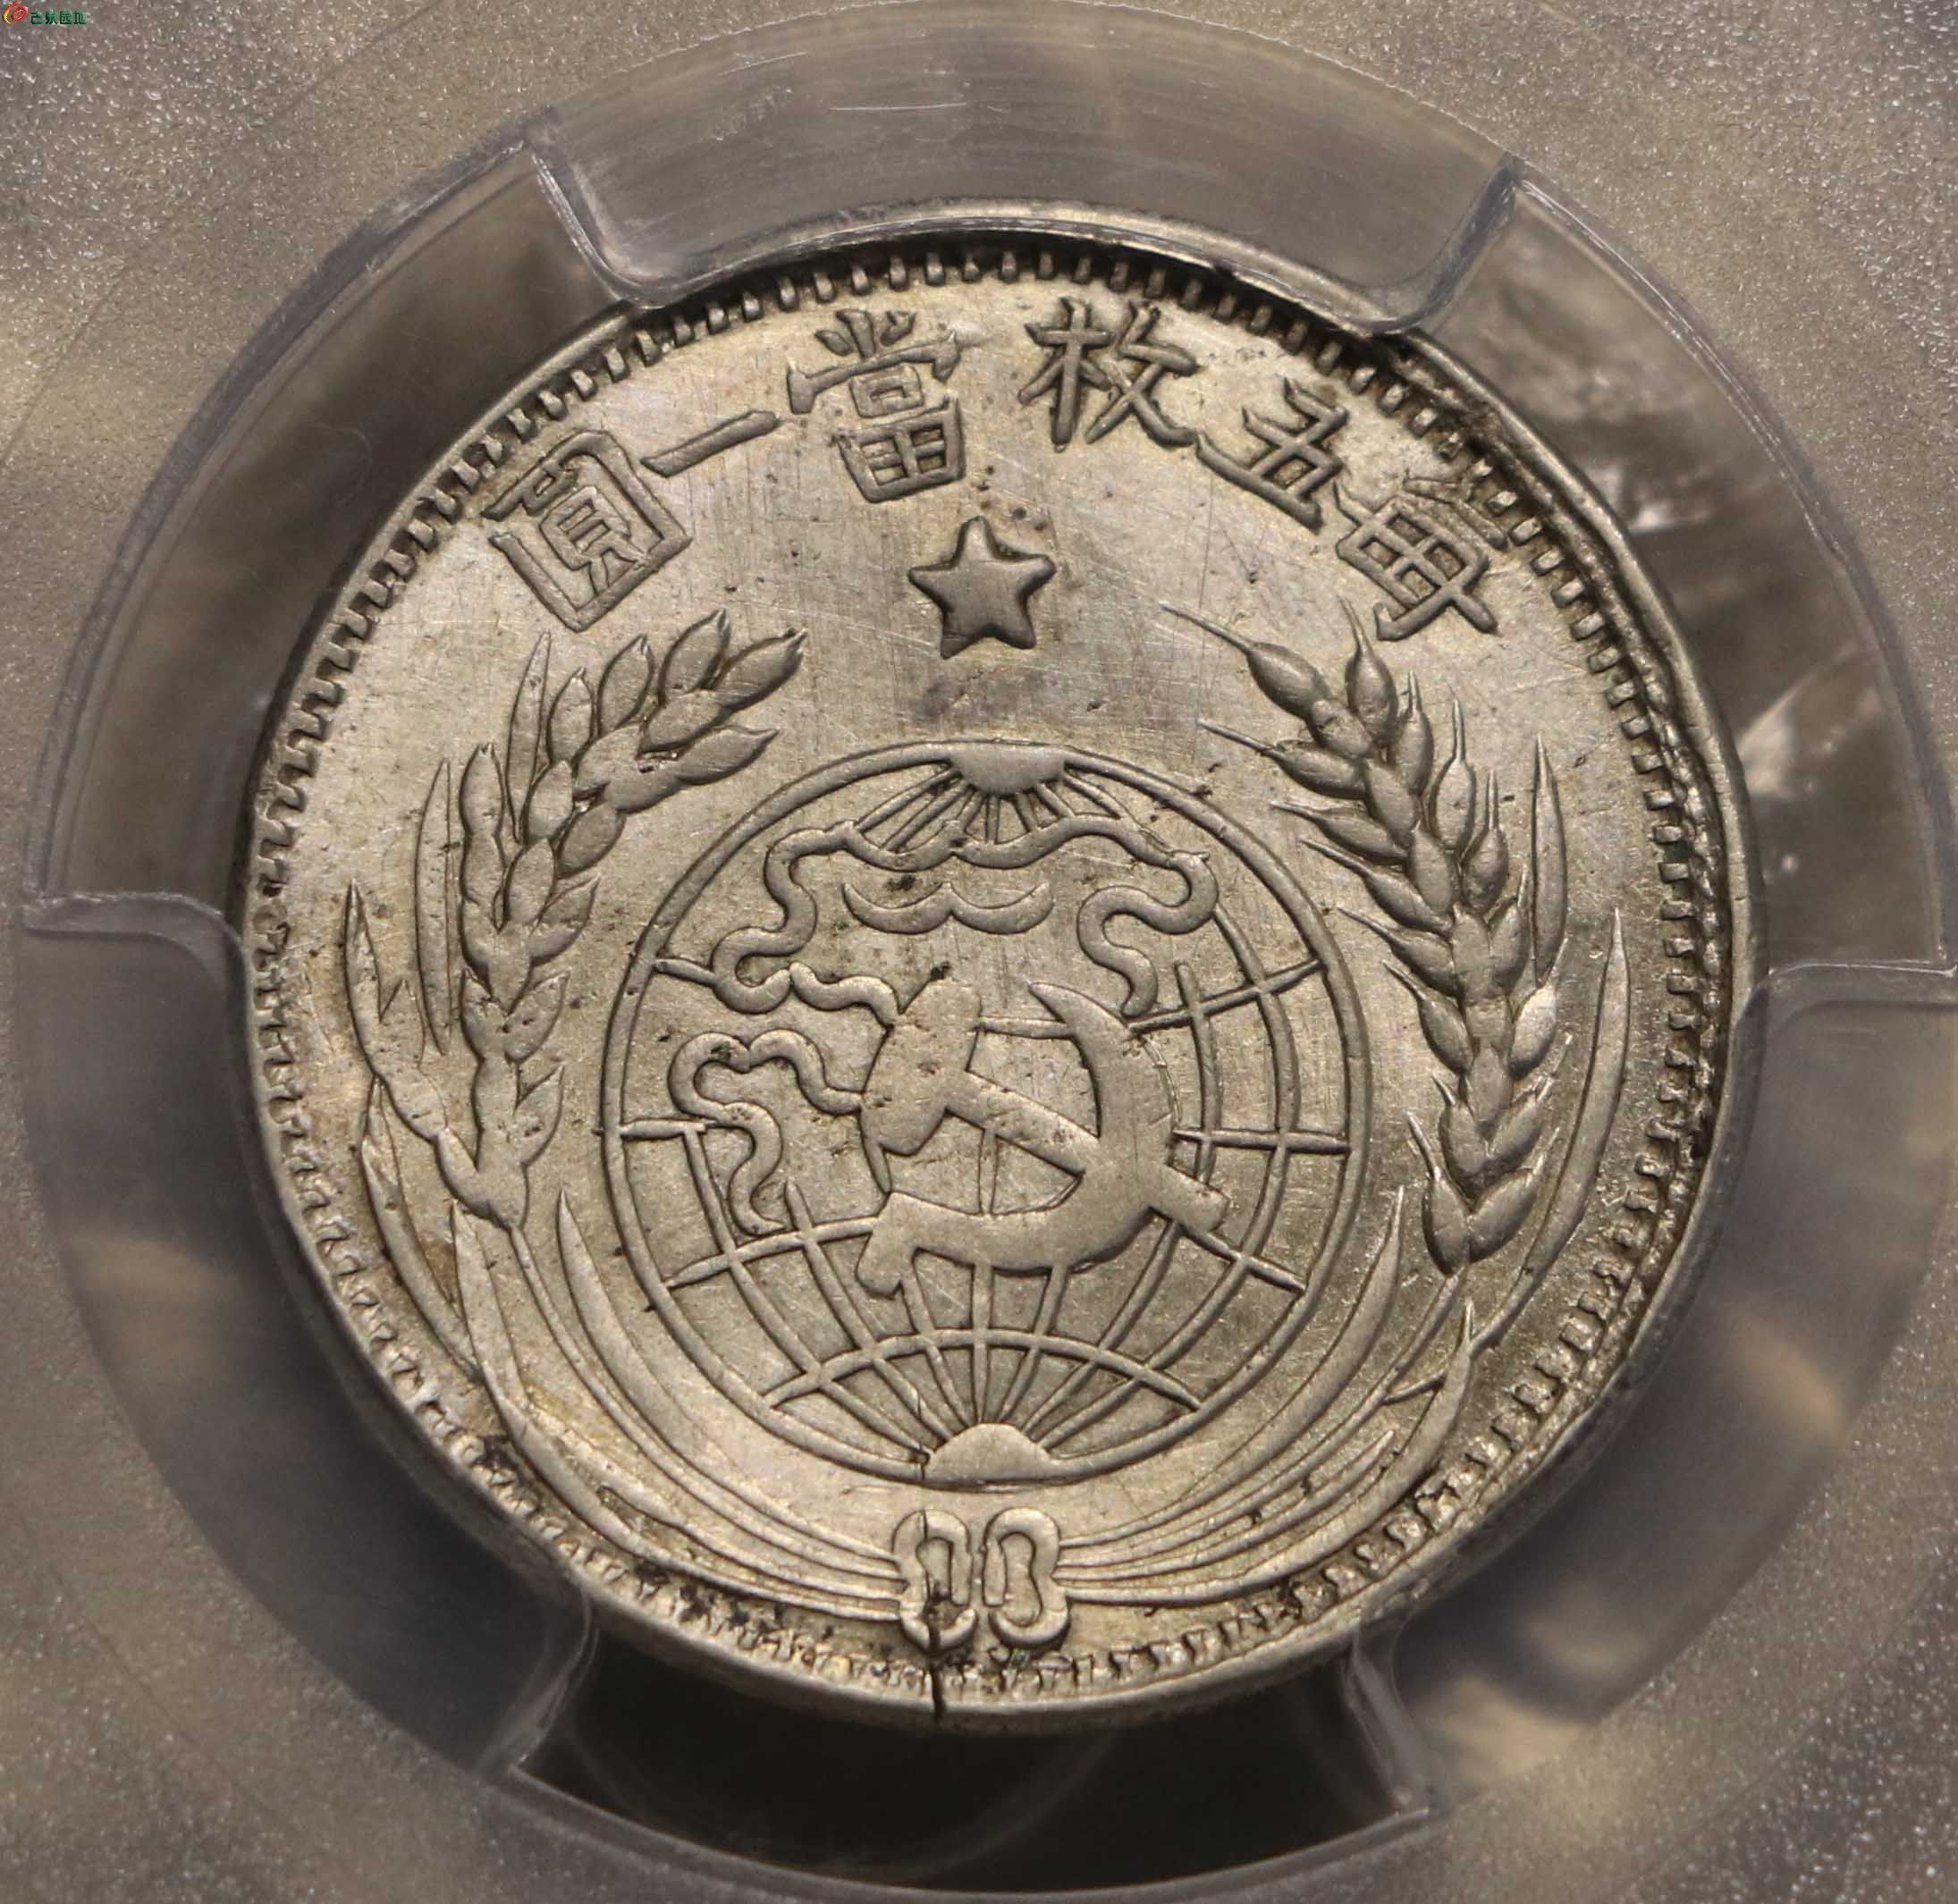 苏维埃共和国货币图片